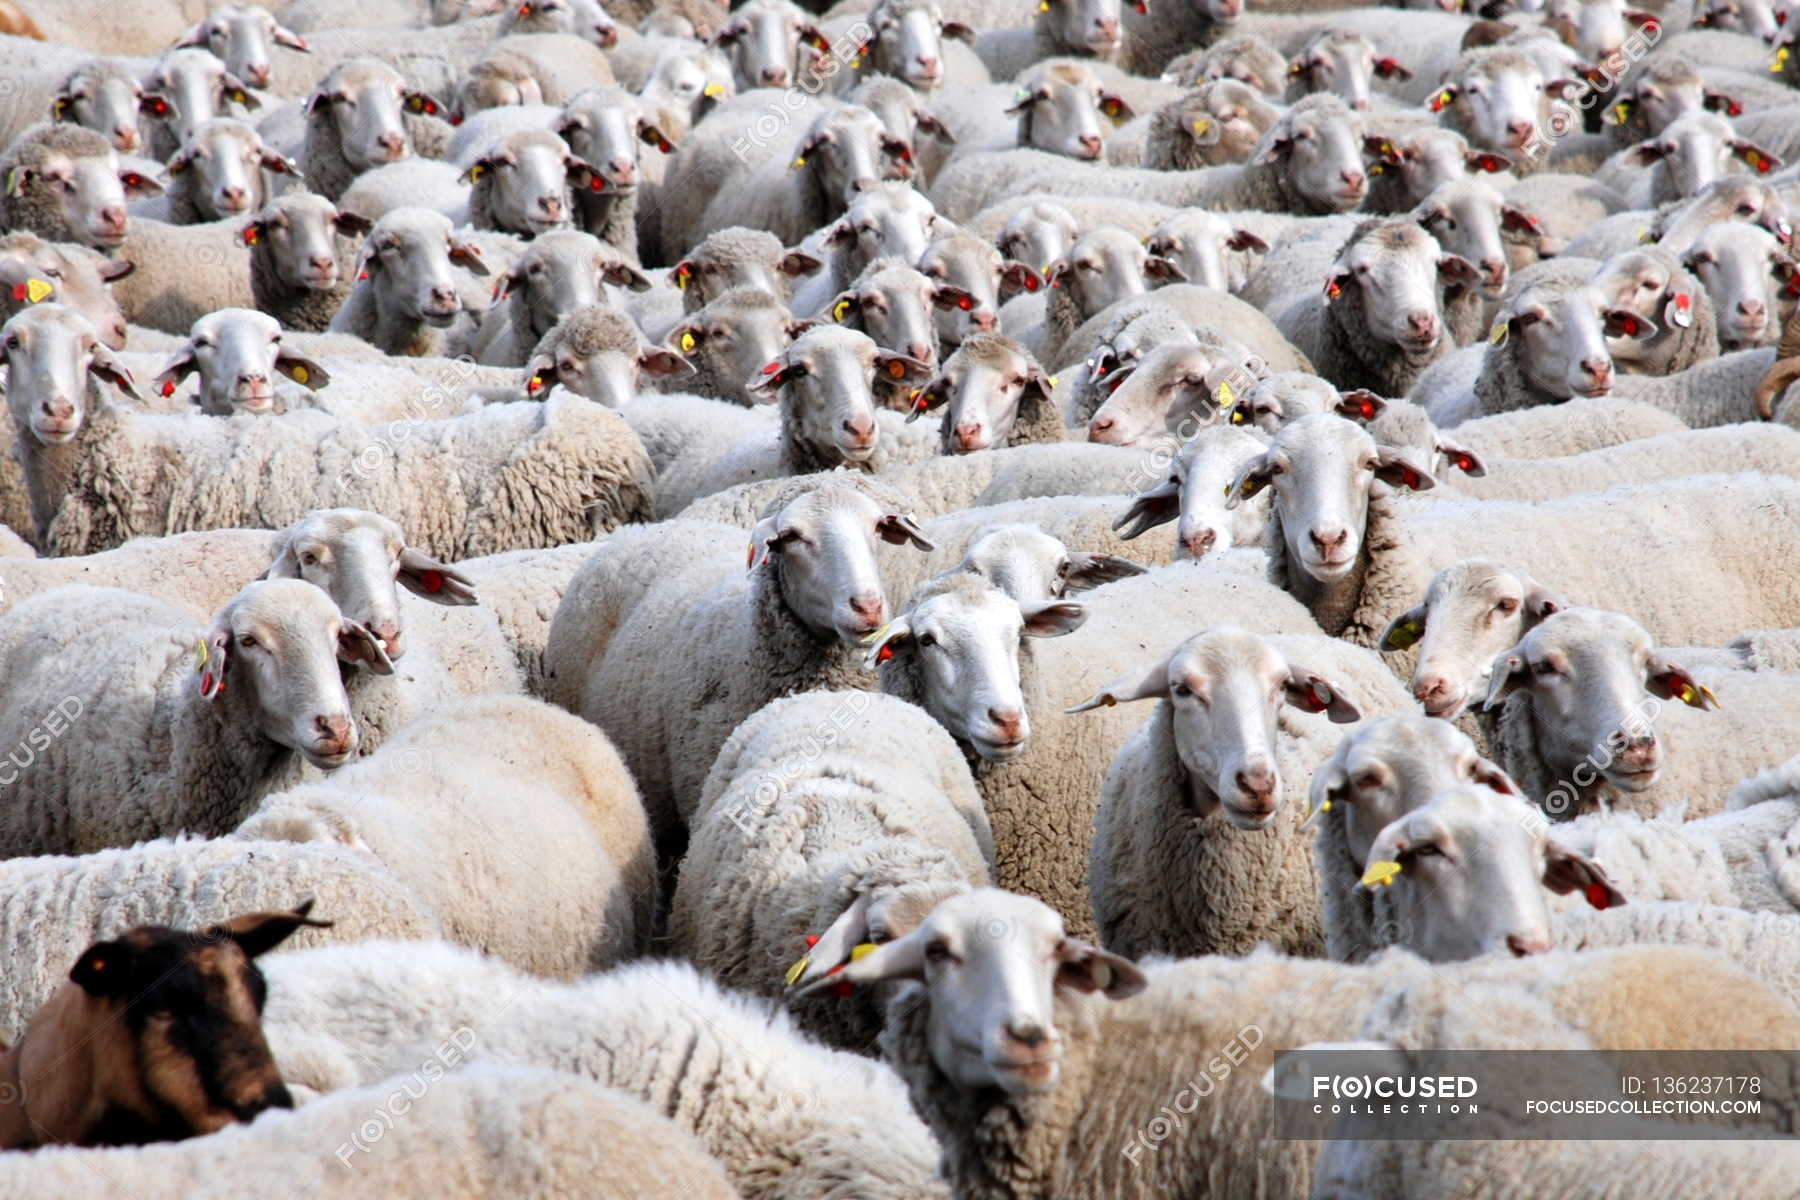 focused_136237178-Large-flock-of-sheep.jpg